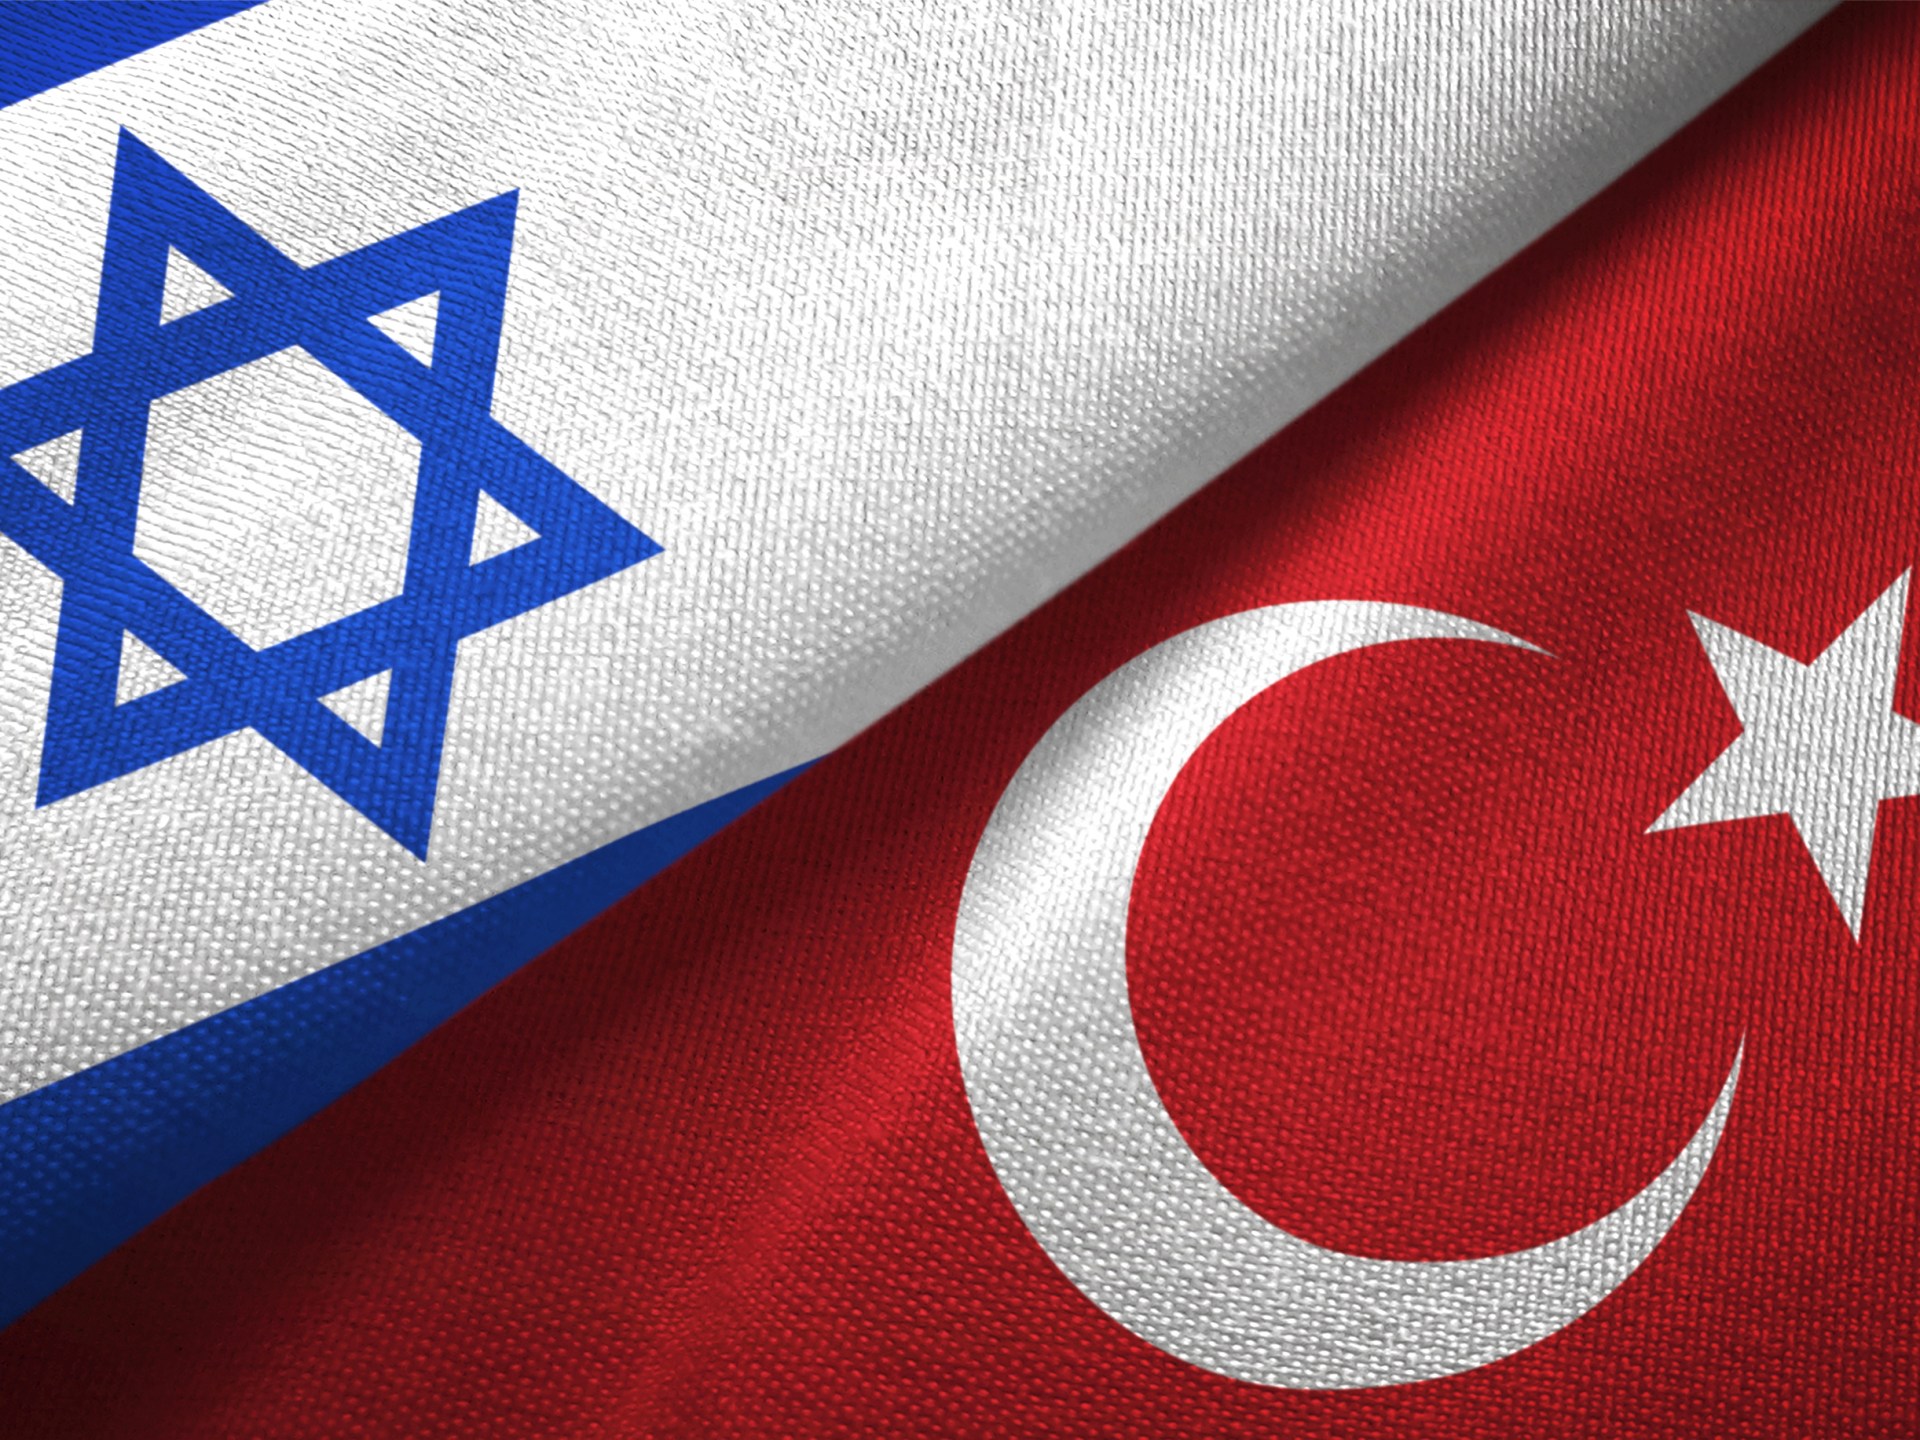 هل تقوى إسرائيل على إلغاء اتفاقية التجارة الحرة مع تركيا؟ | اقتصاد